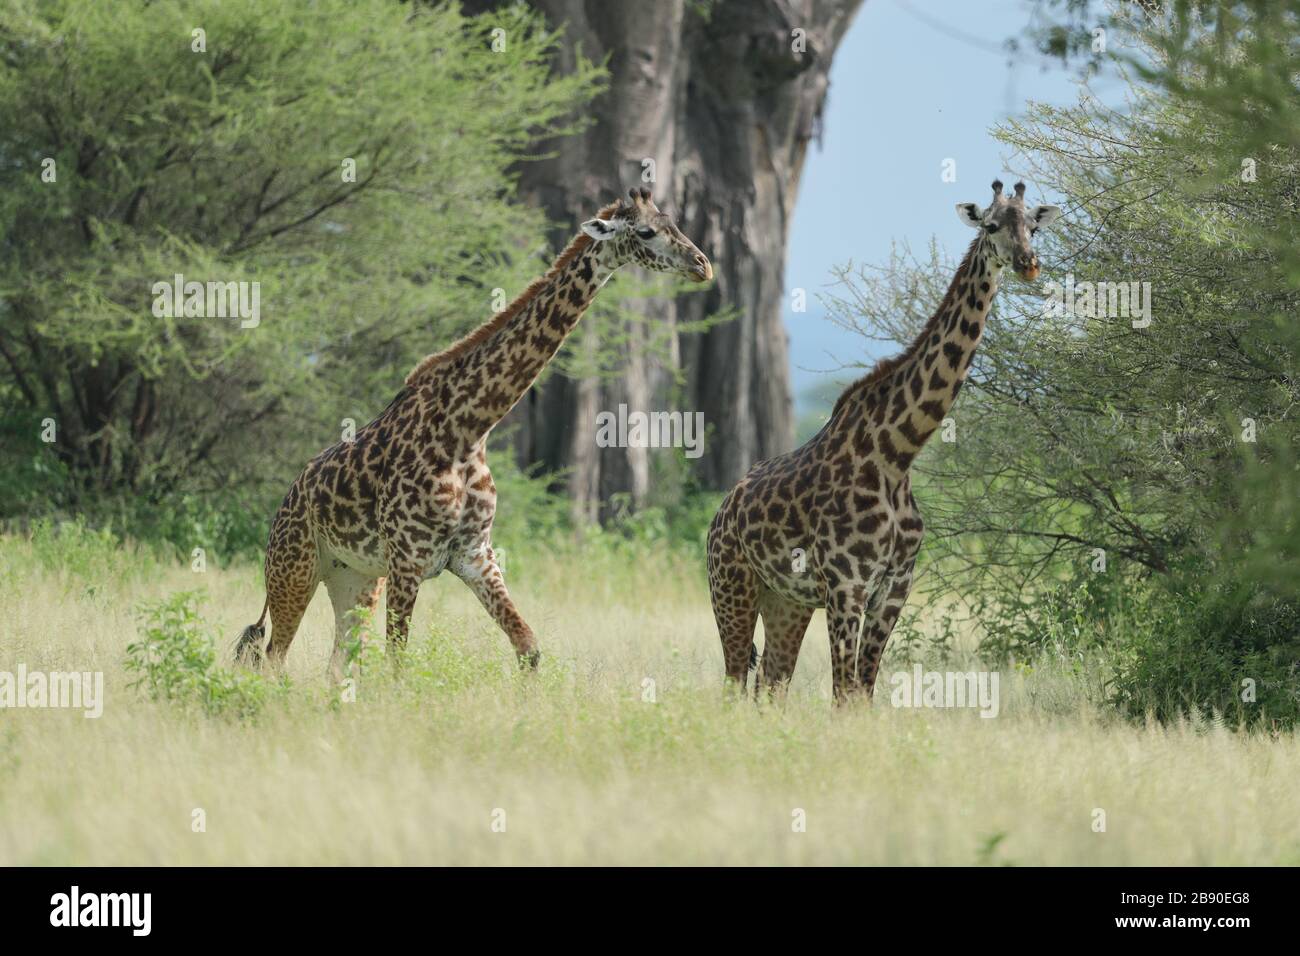 La giraffa di Masai, anche detta giraffa di Maasai, detta anche giraffa di Kilimanjaro, è la più grande sottospecie di giraffa. Foto Stock